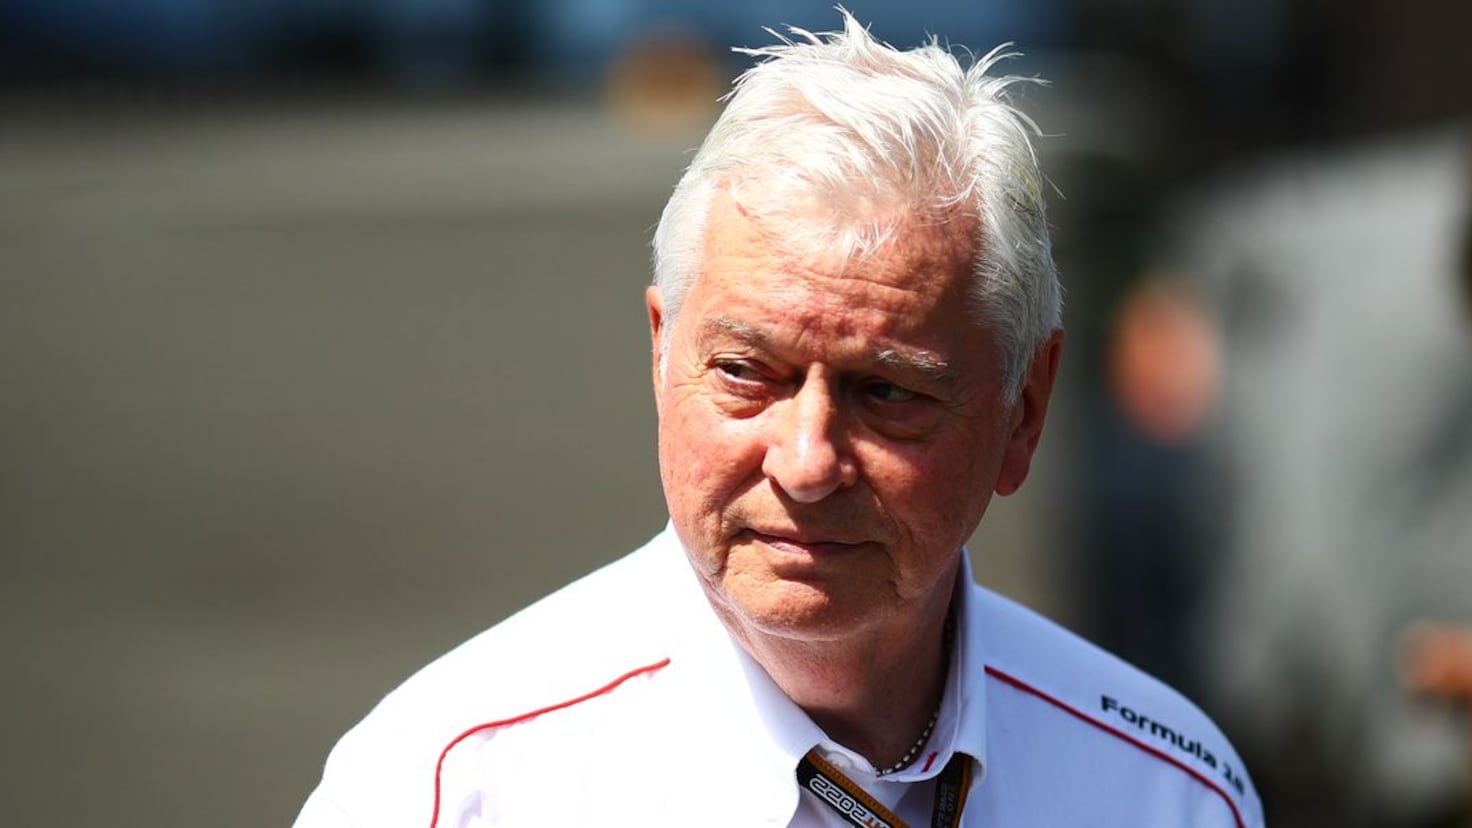 , jefe técnico de la F1, dejará su Según adelanta \'Autosport\'  ,ingeniero se despedirá desppuesto...